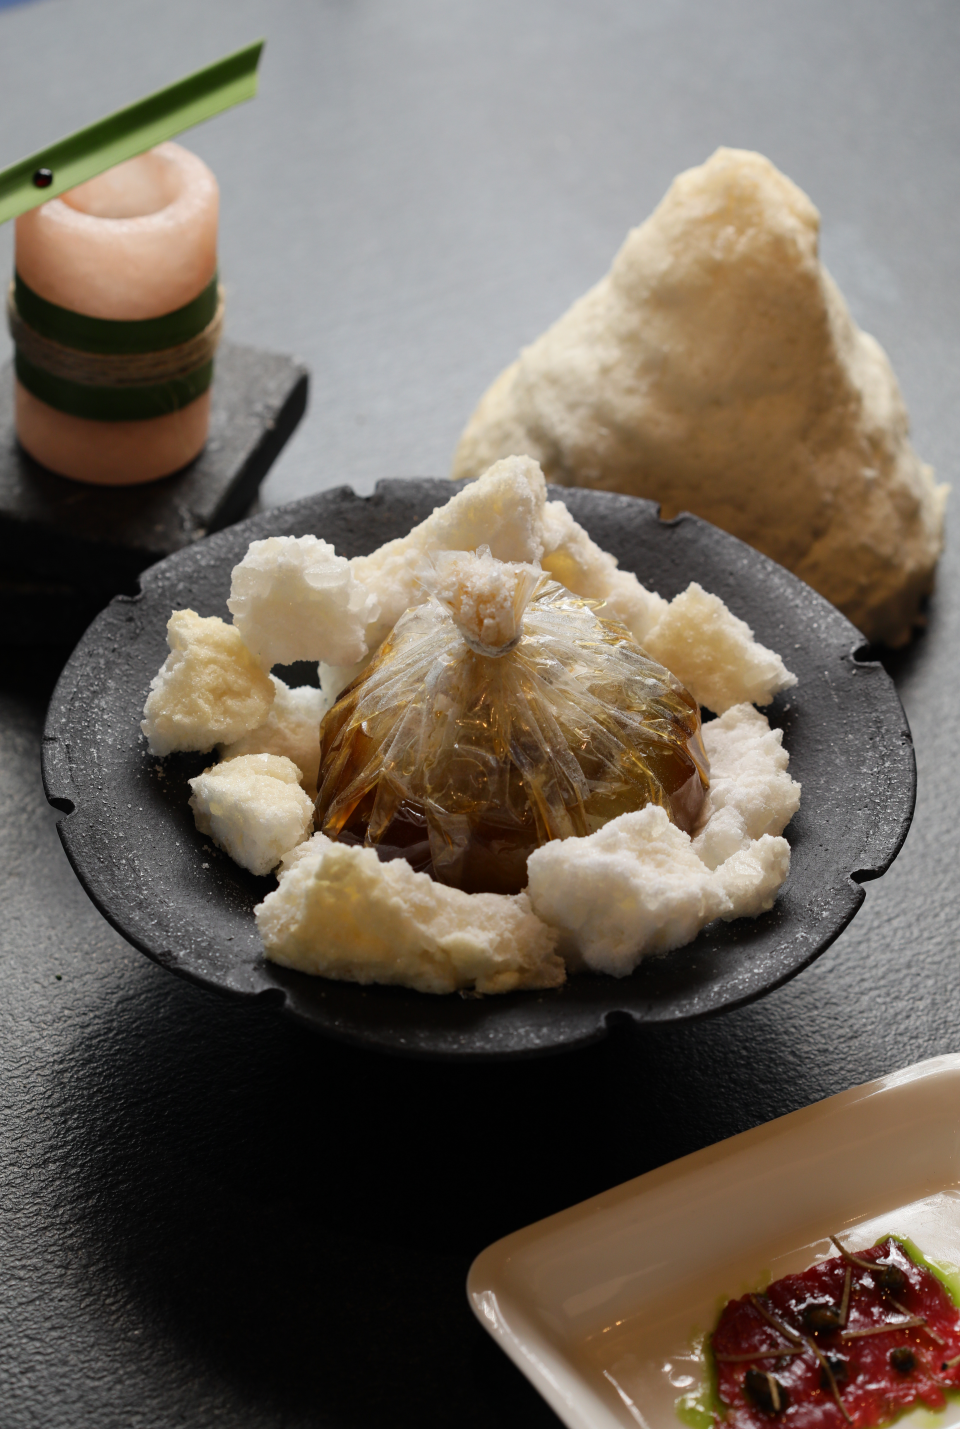 鹽是台南早期的經濟命脈，鹽焗5小時的洋蔥，因時間而慢轉甘甜。